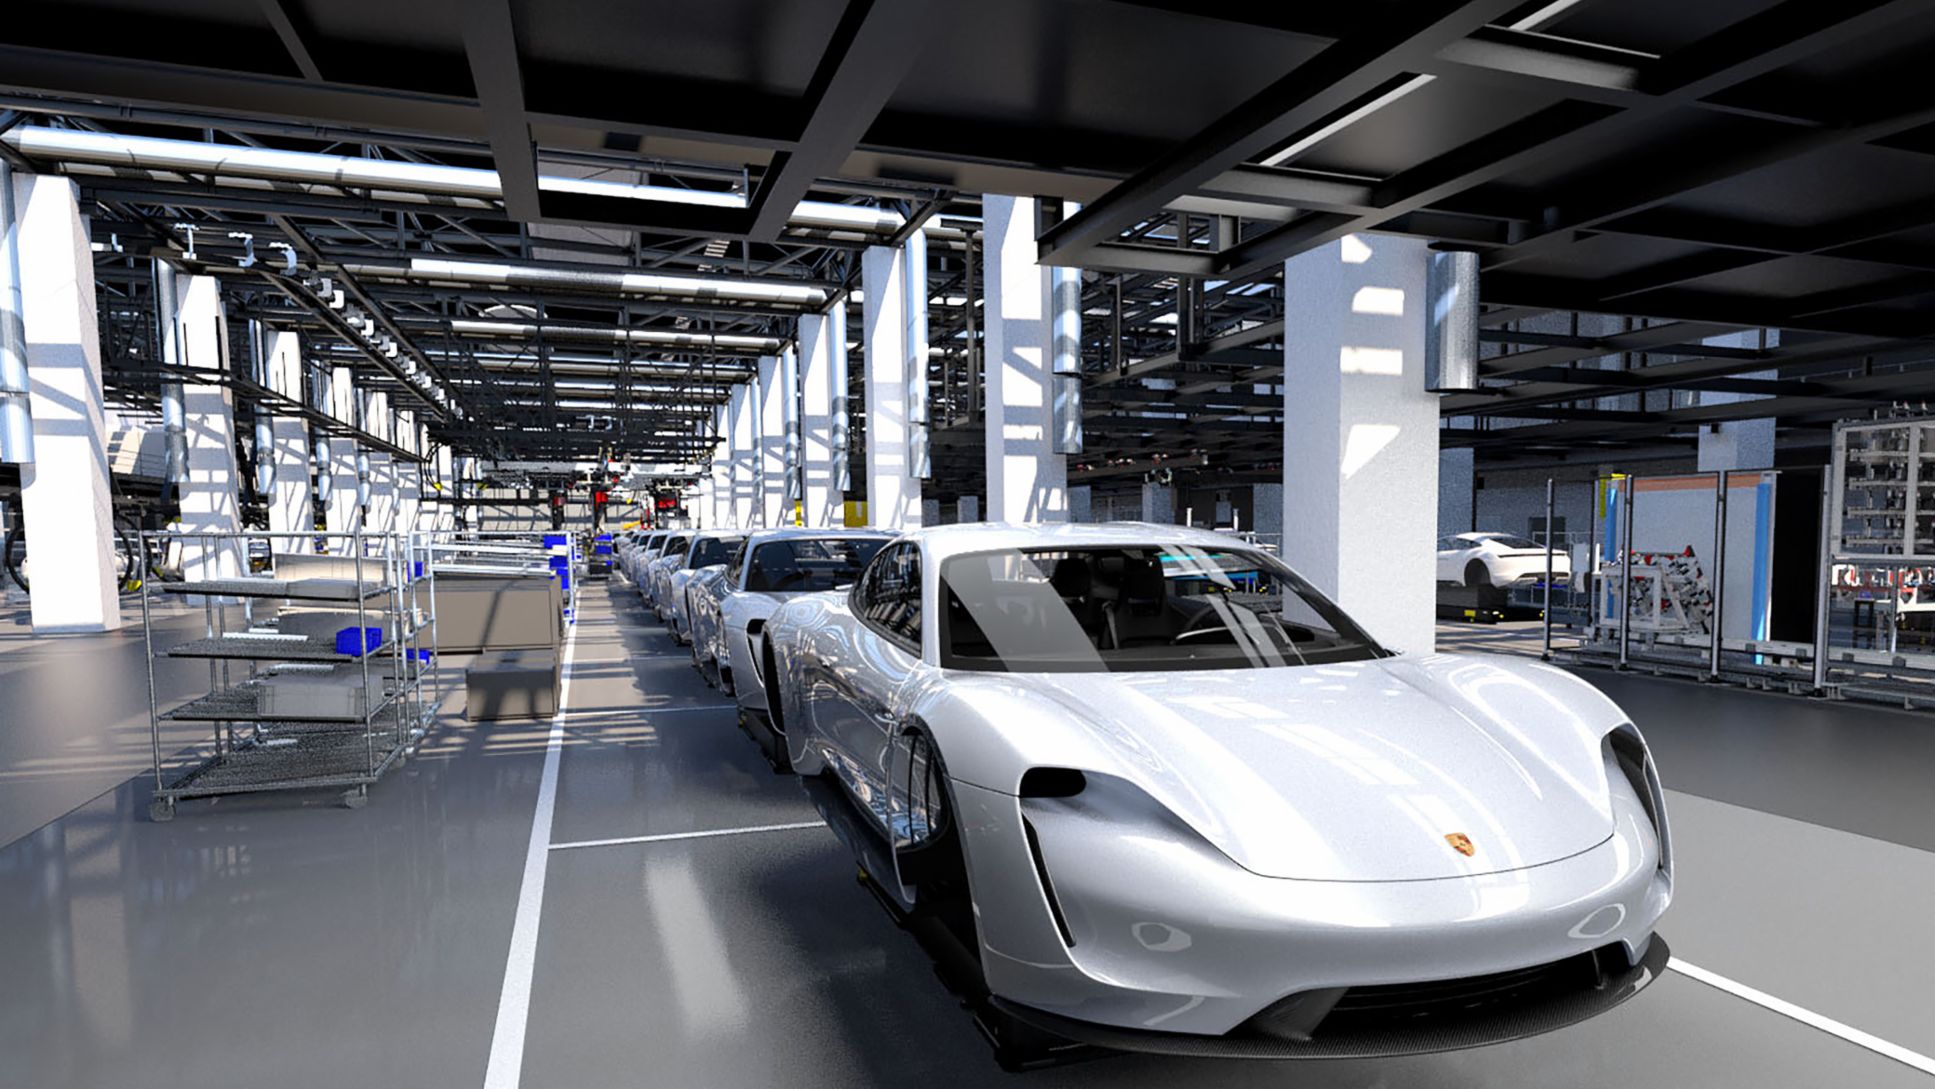 Einblicke in die Porsche Produktion 4.0, 2018, Porsche AG